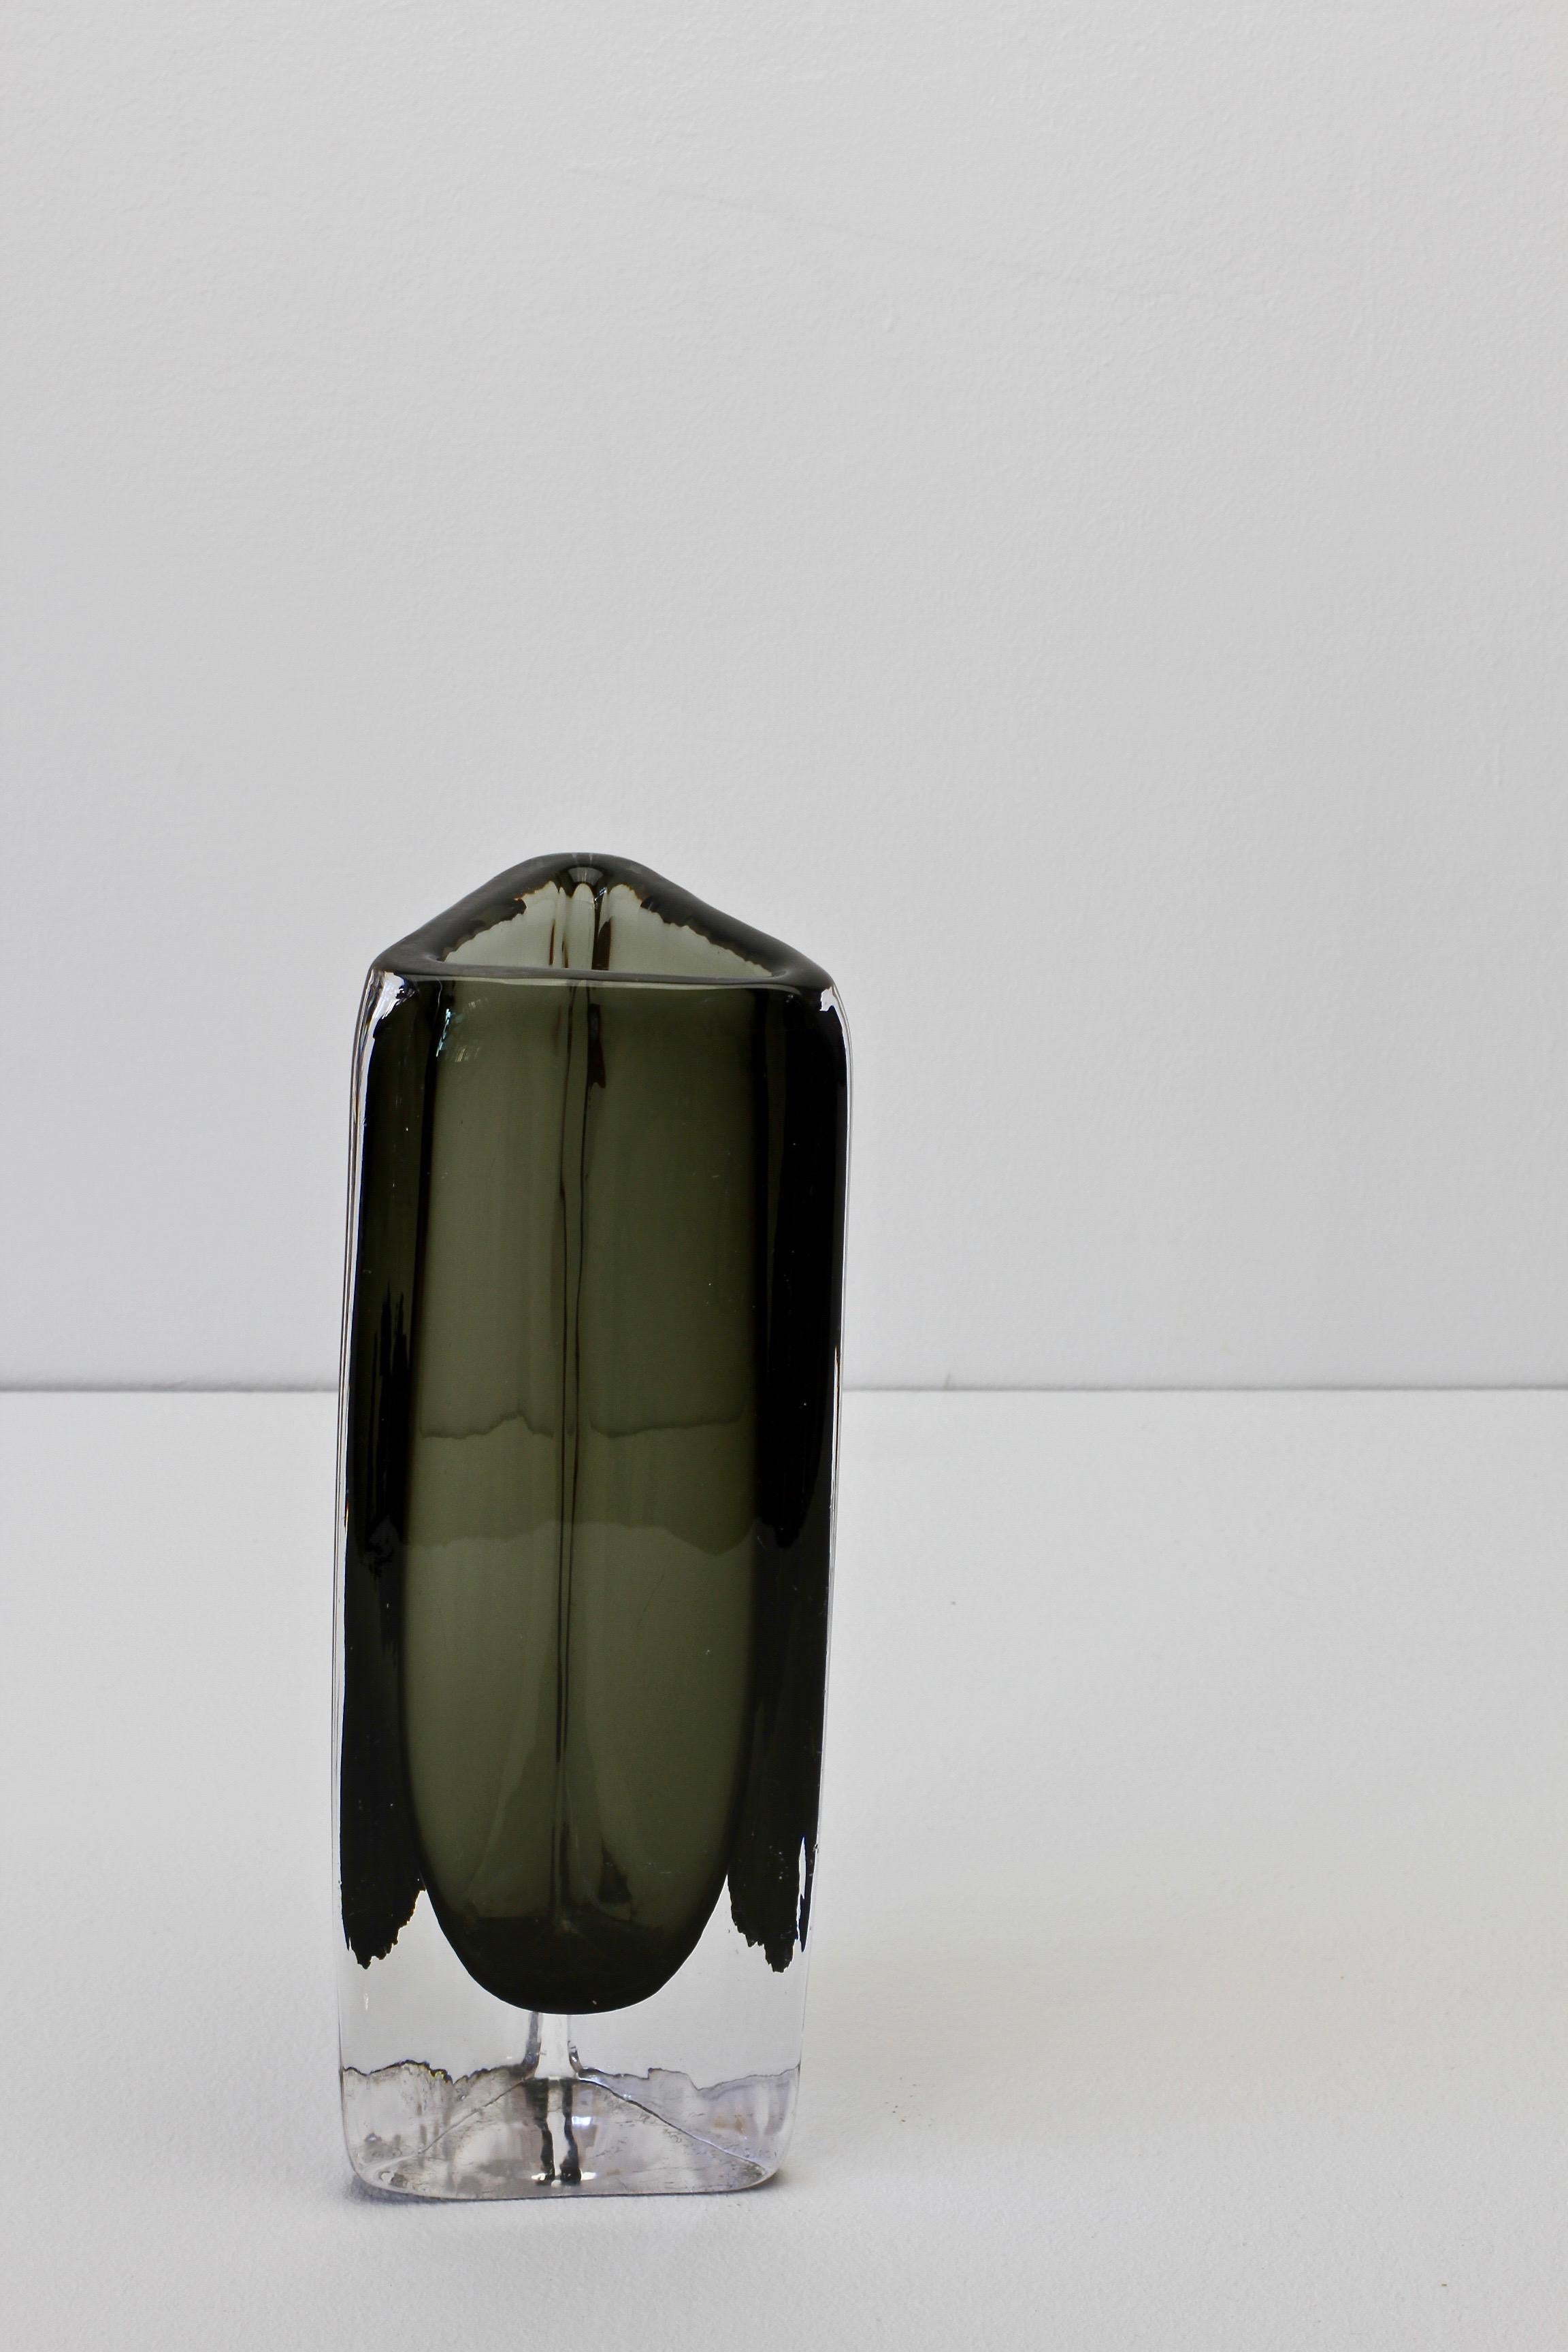 Tall 1950s Dark Toned Sommerso Vase Signed Nils Landberg for Orrefors Glass For Sale 5